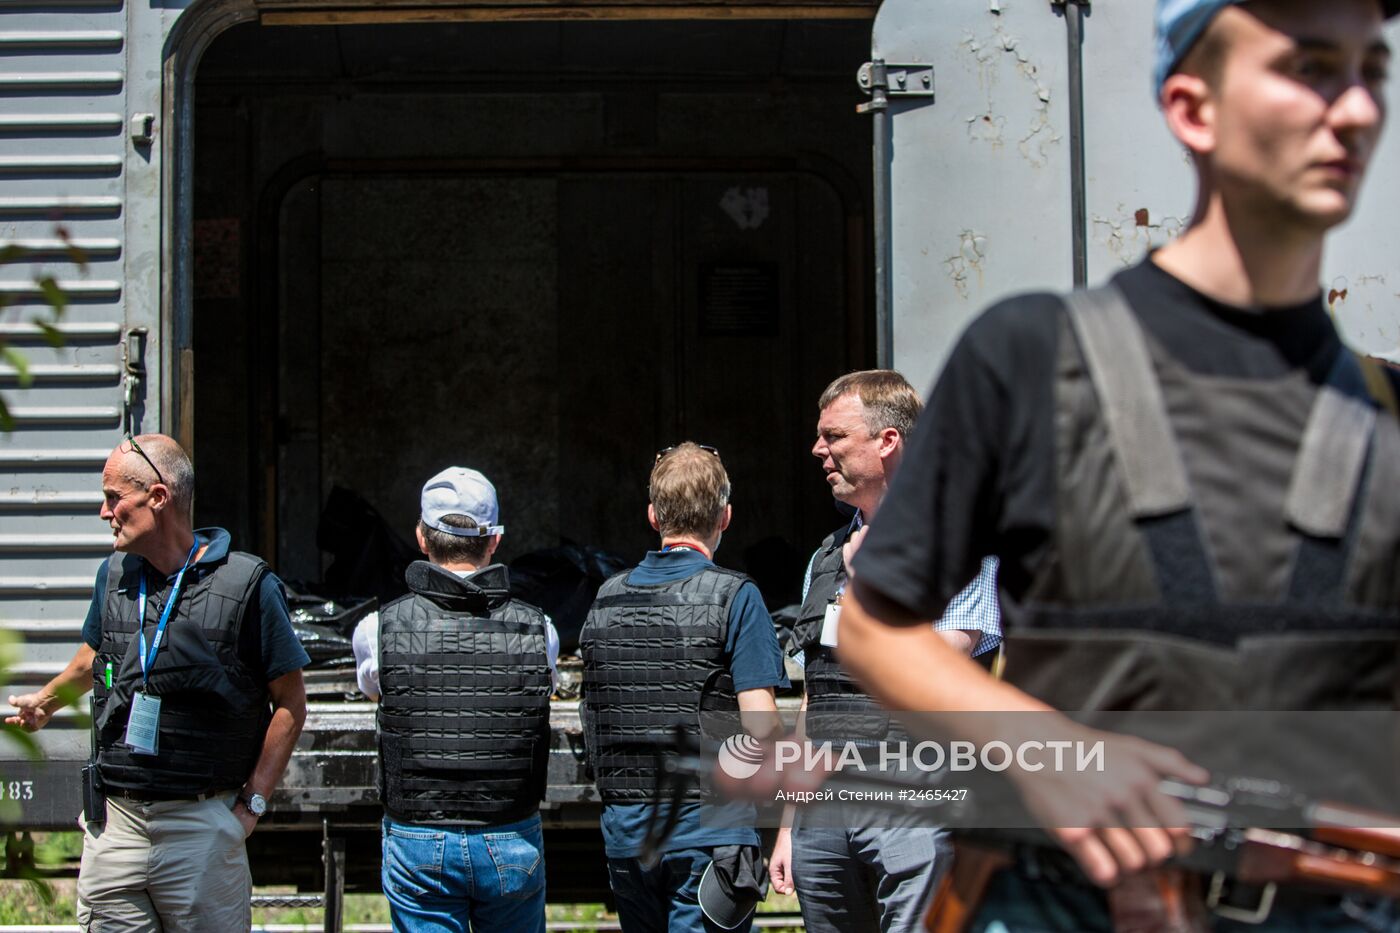 Поезд с телами погибших в крушении Boeing 777 на Украине перед отправкой в Донецк